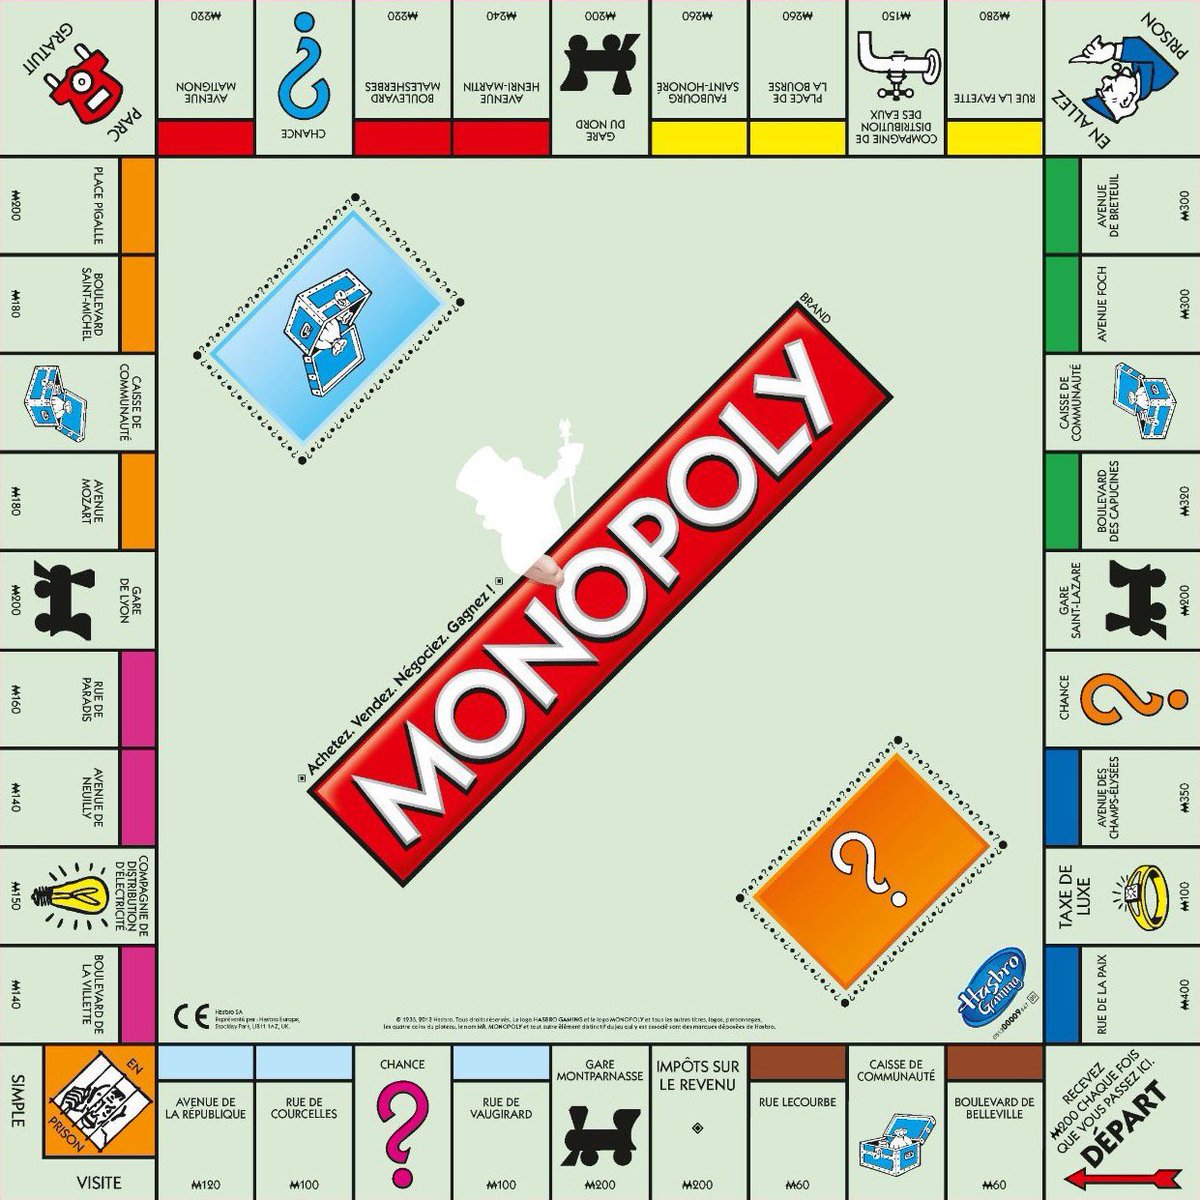 Imaginez-vous jouer au Monopoly sans jamais acheter le moindre actif,

Vous vous contenteriez de récupérer quelques billets à chaque fois que vous repassez par la case départ,

Pourriez-vous gagner la partie ? 🧐

Pourtant,

C'est ainsi que beaucoup de personnes vivent leur vie.